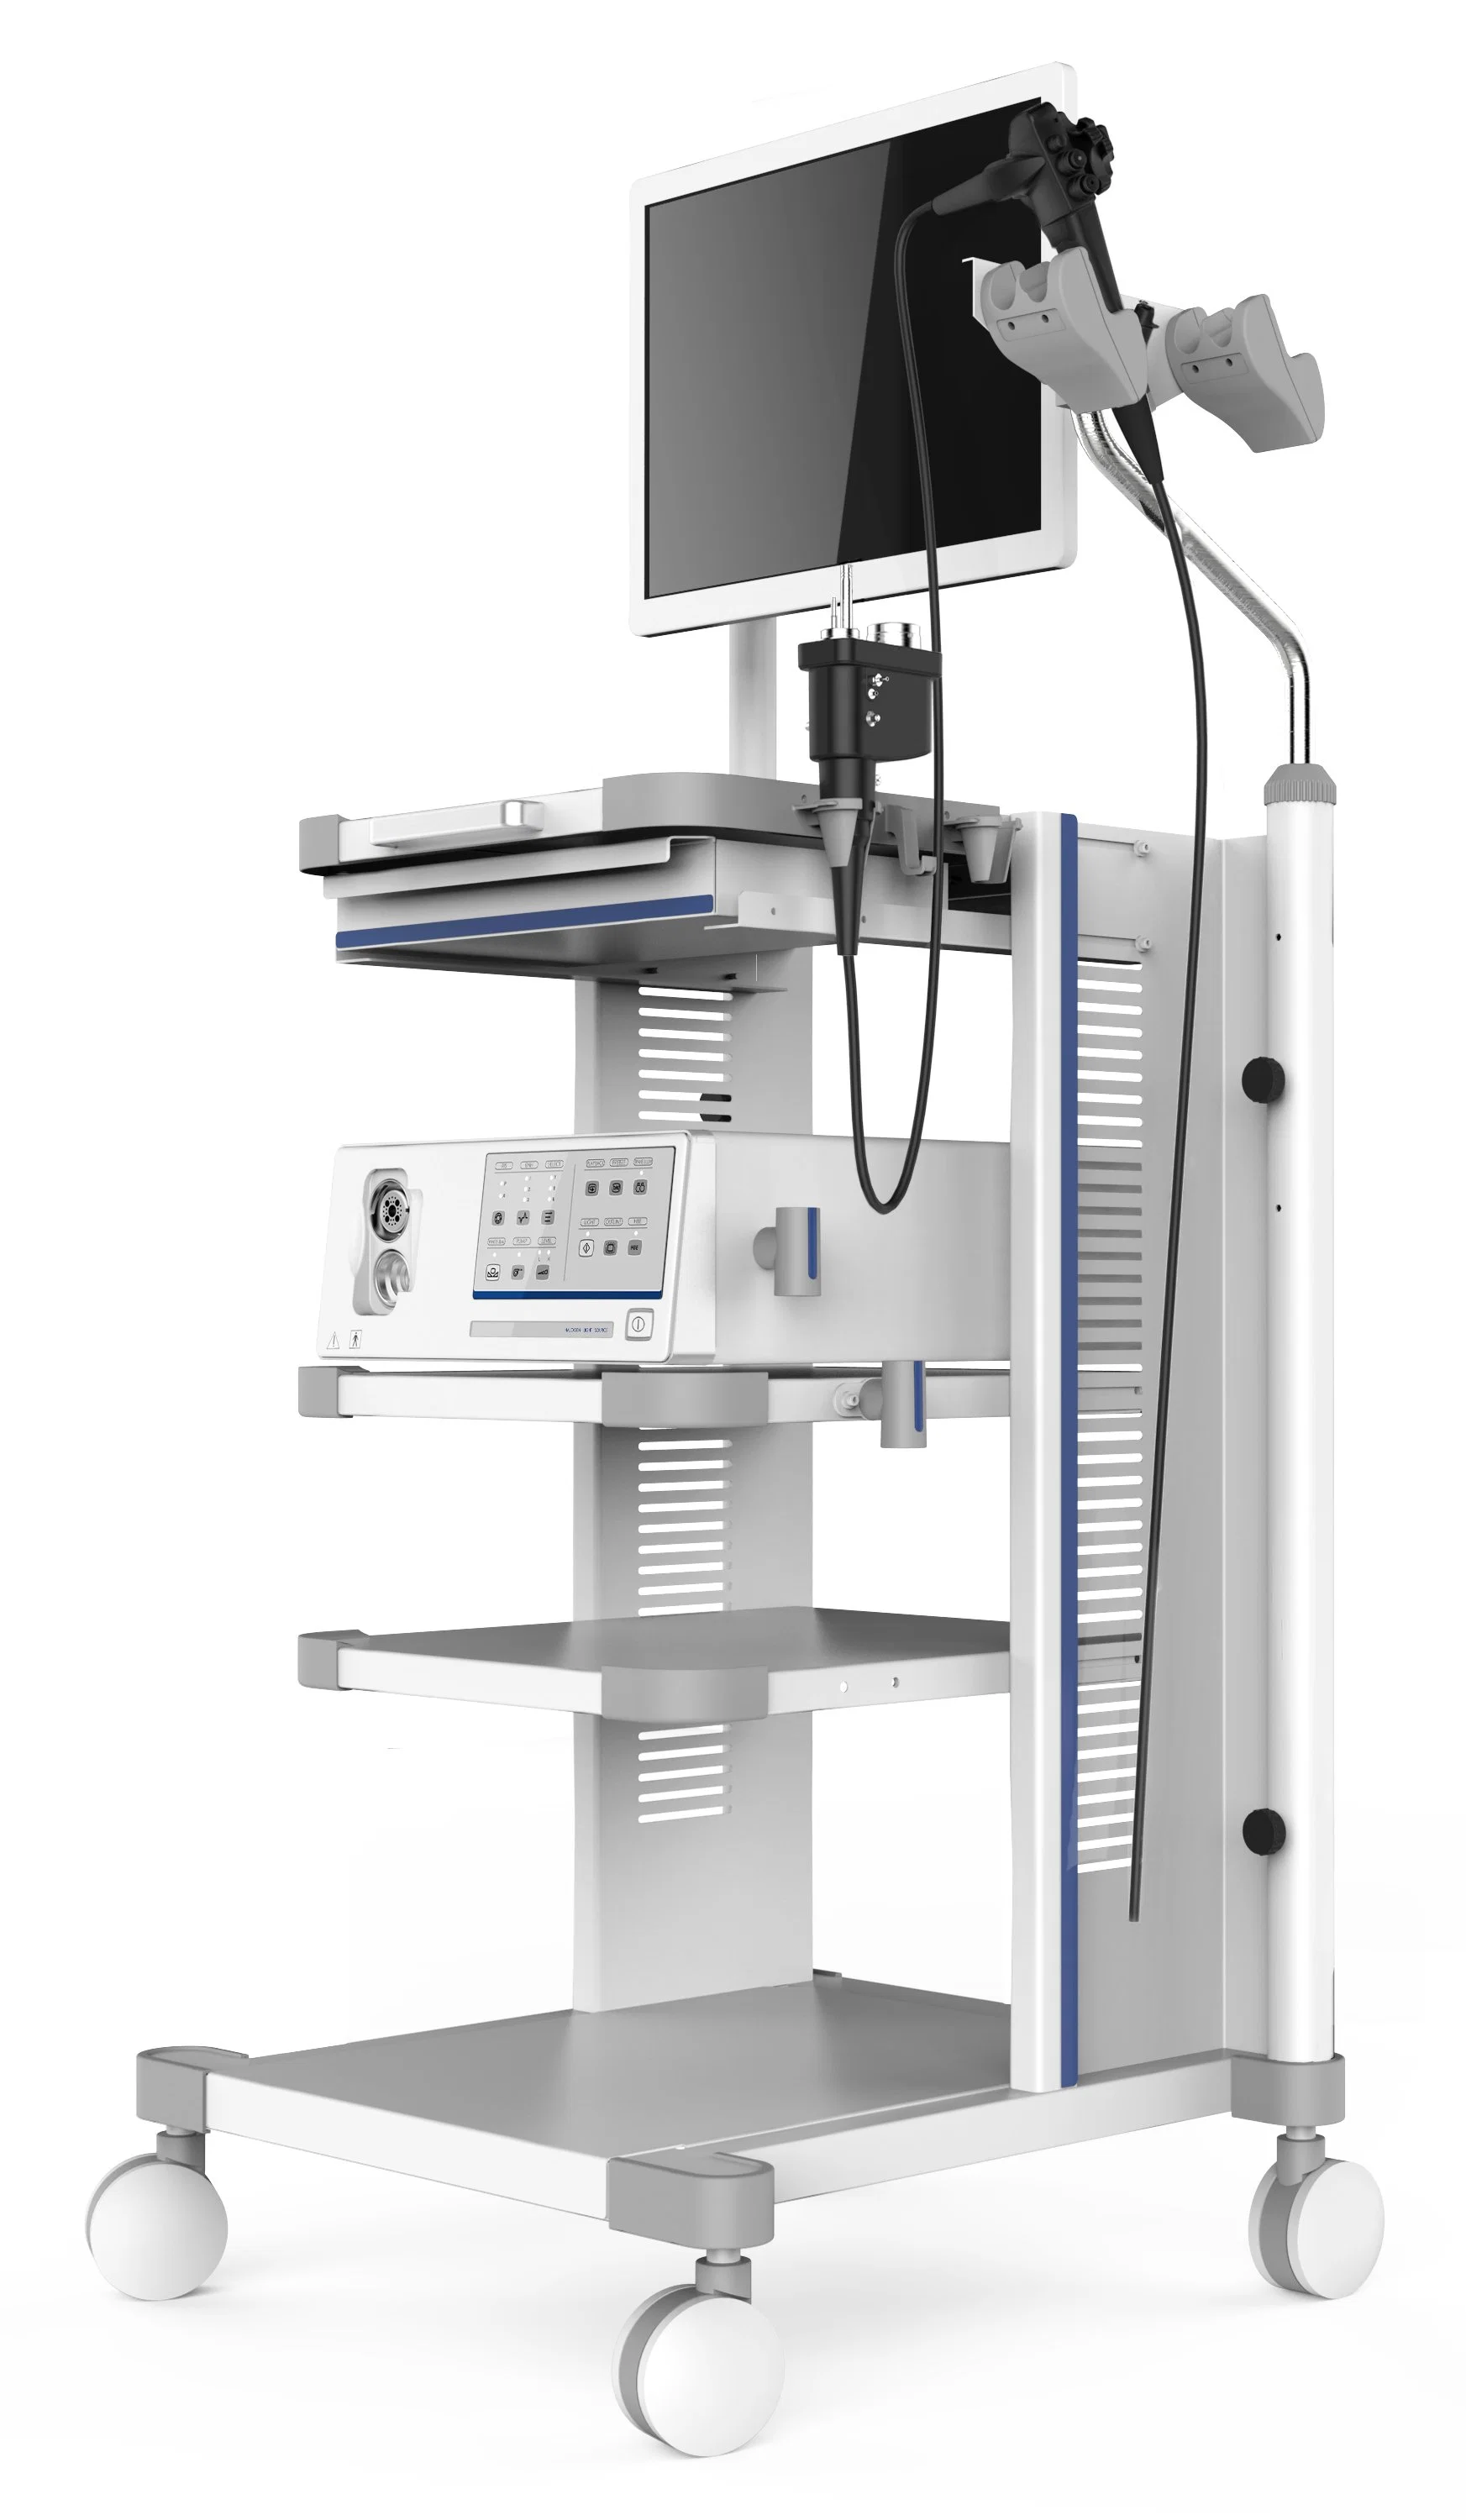 Sistema de Video Endoscopio gastrointestinal y Colono